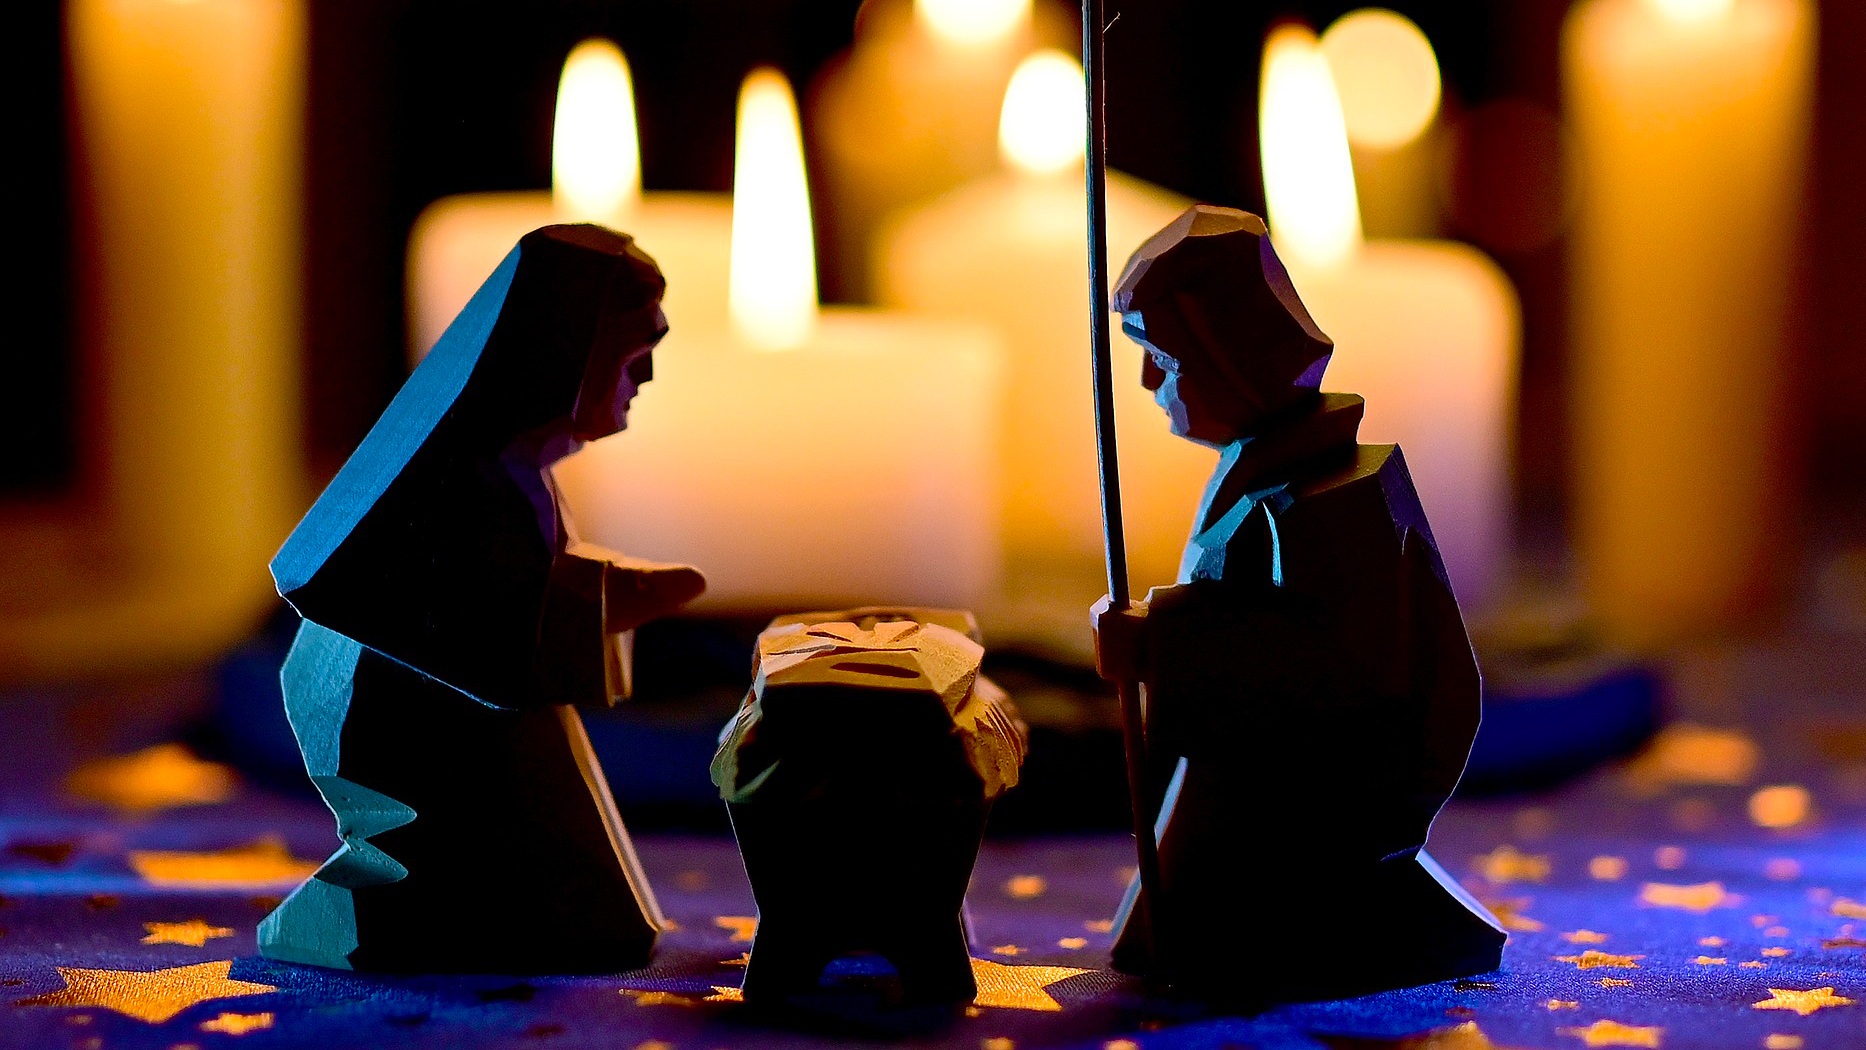 "L’accueil de Marie a permis à Dieu de venir dresser sa tente parmi nous" | © Pixabay 